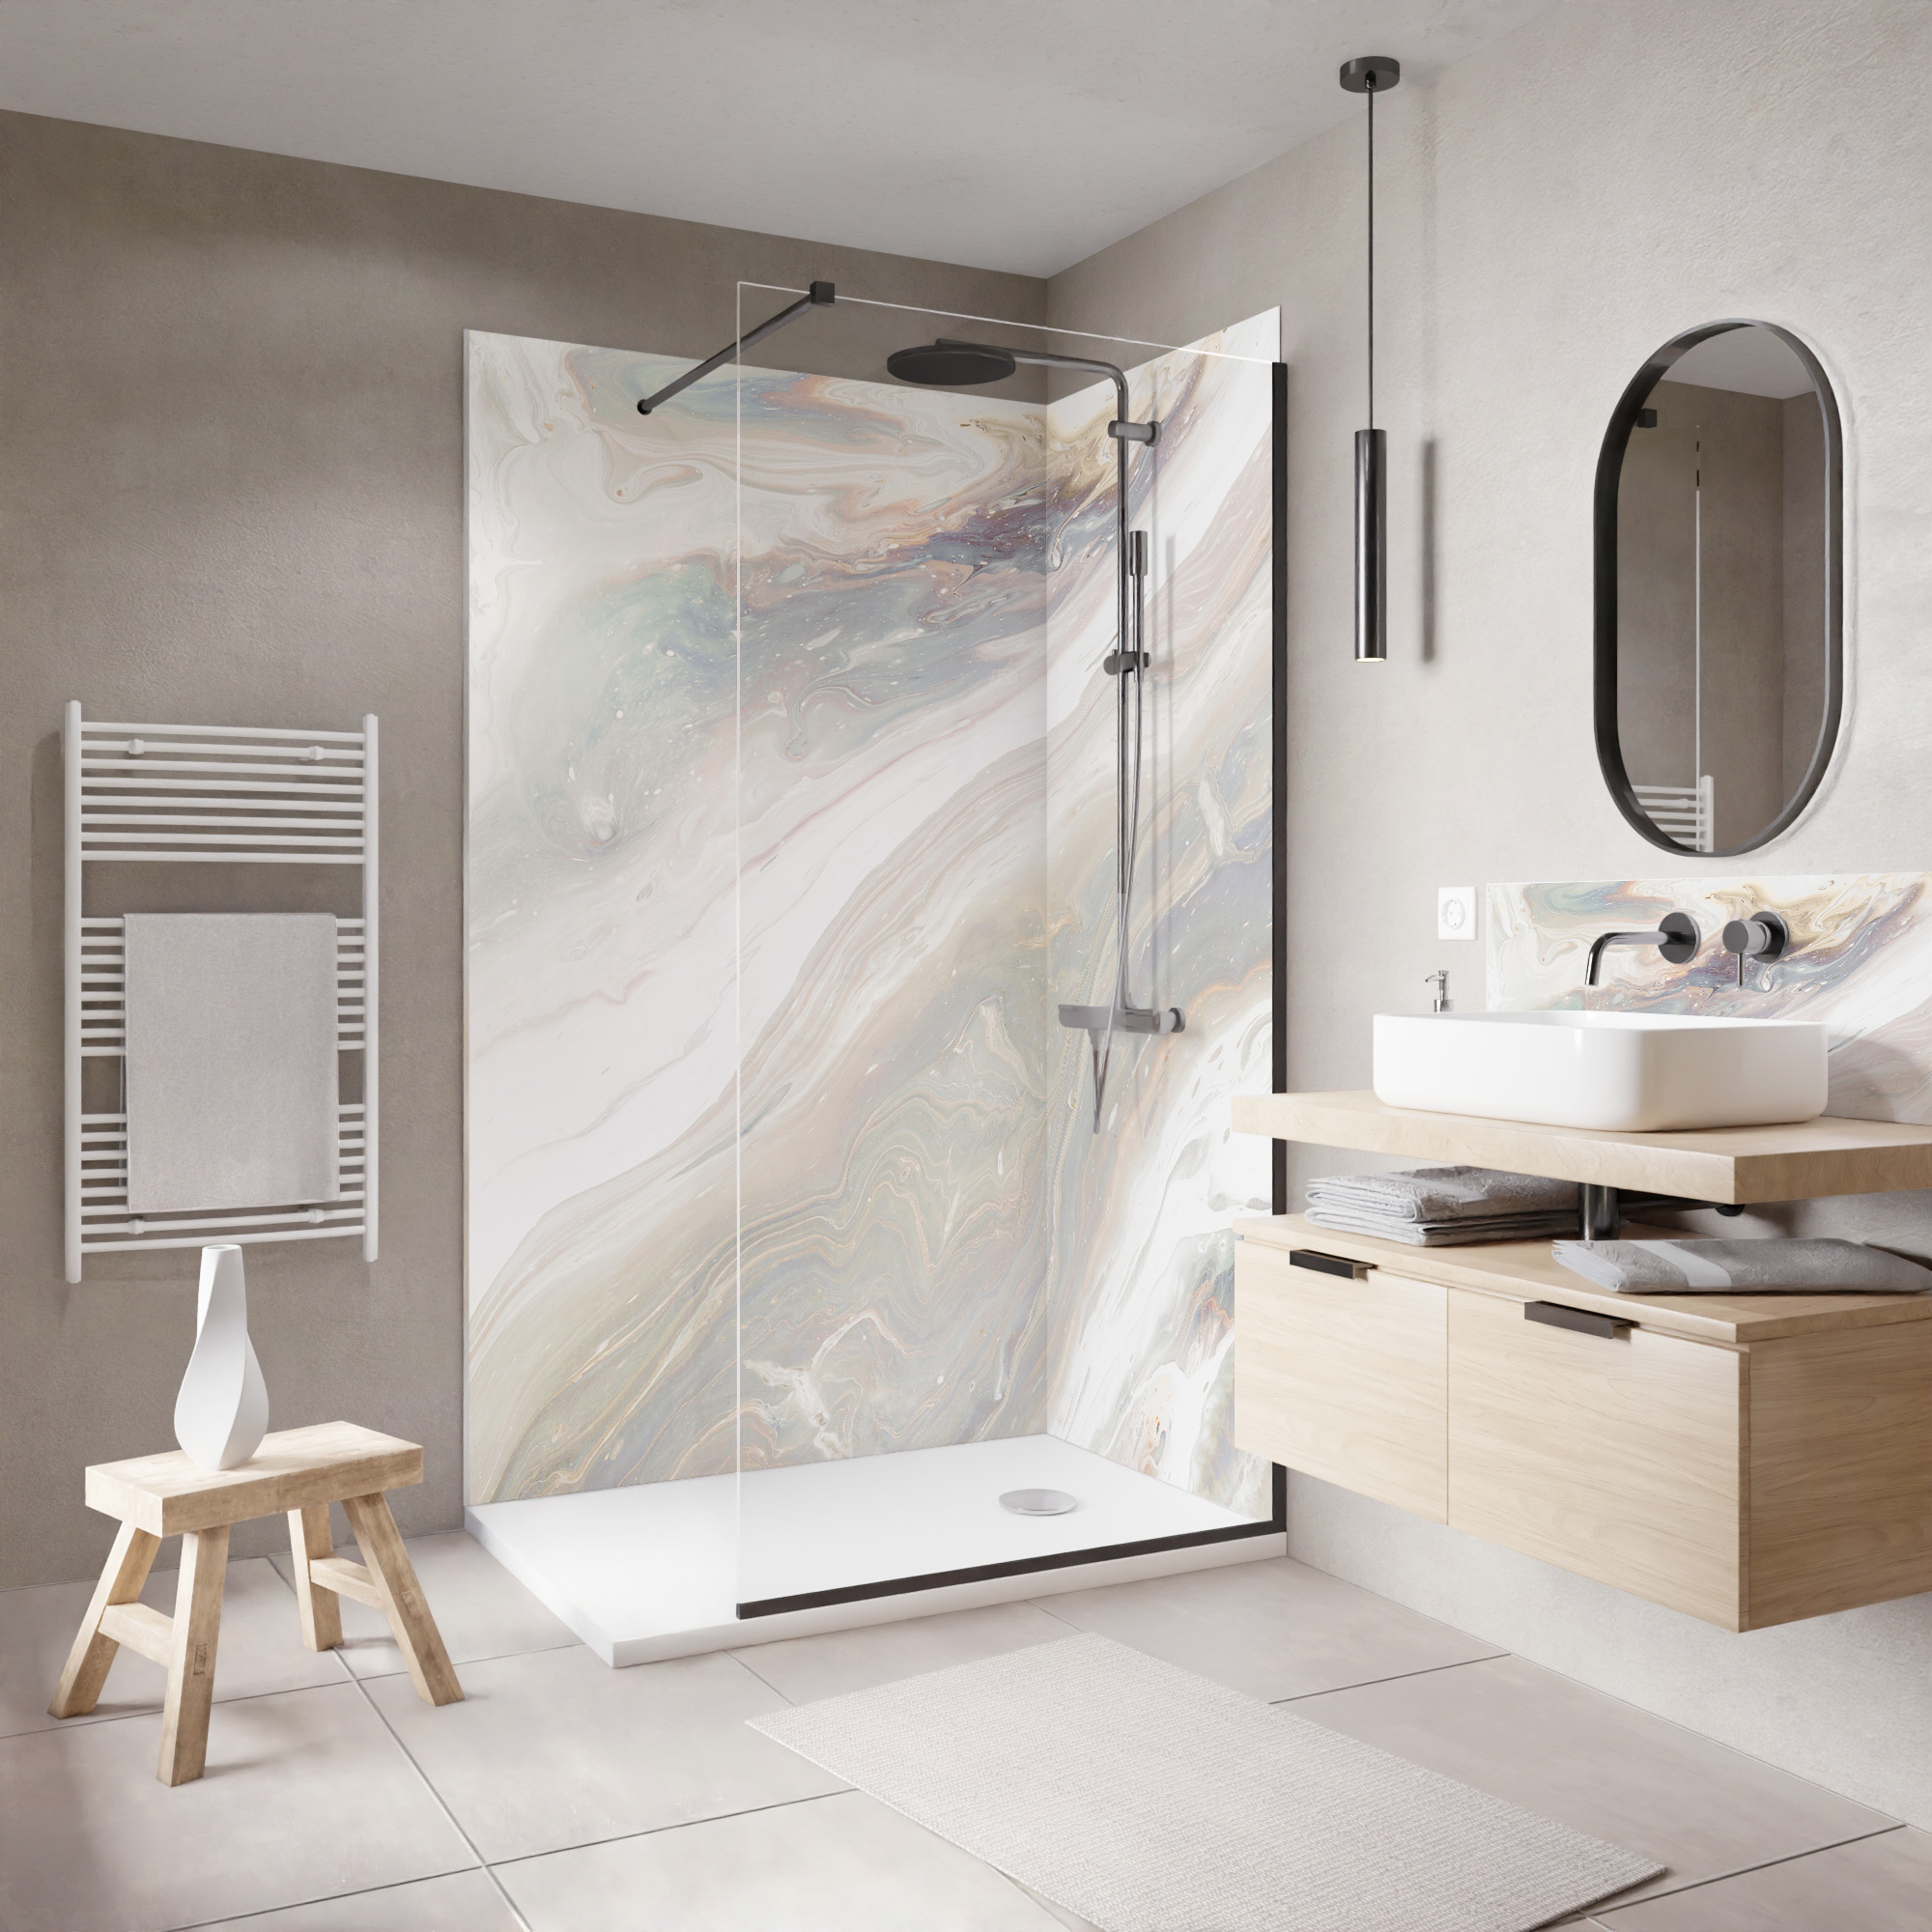 Salle de bain avec des panneaux muraux : 17 idées déco - Quark